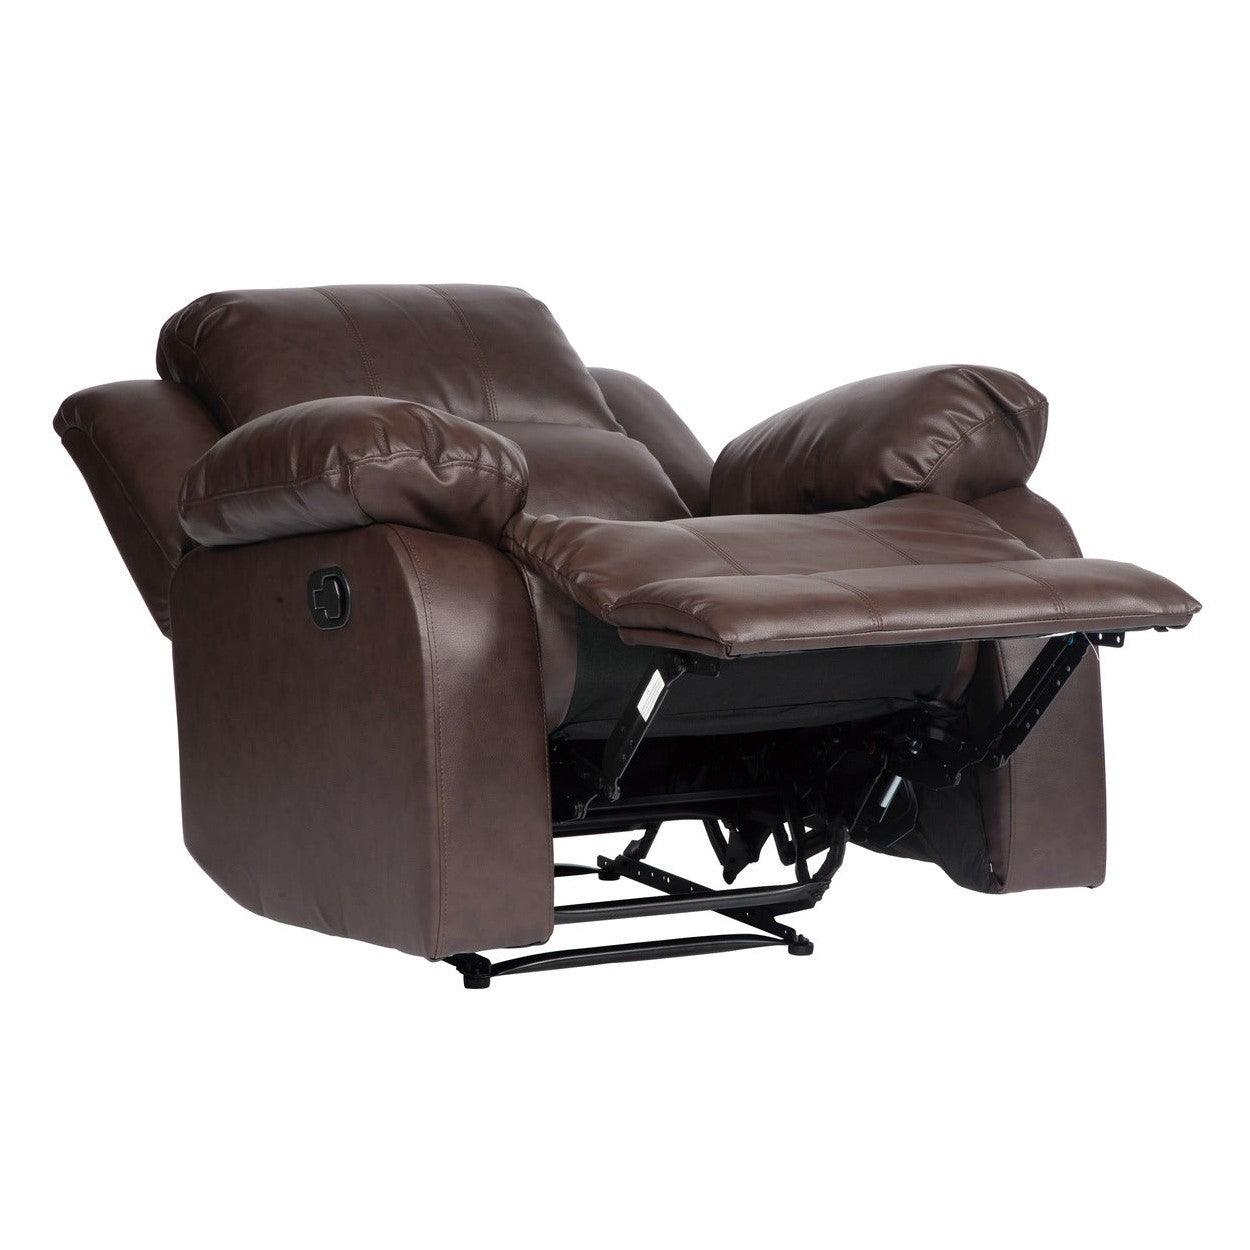 Juego de sillón reclinable marrón chocolate Dynamo